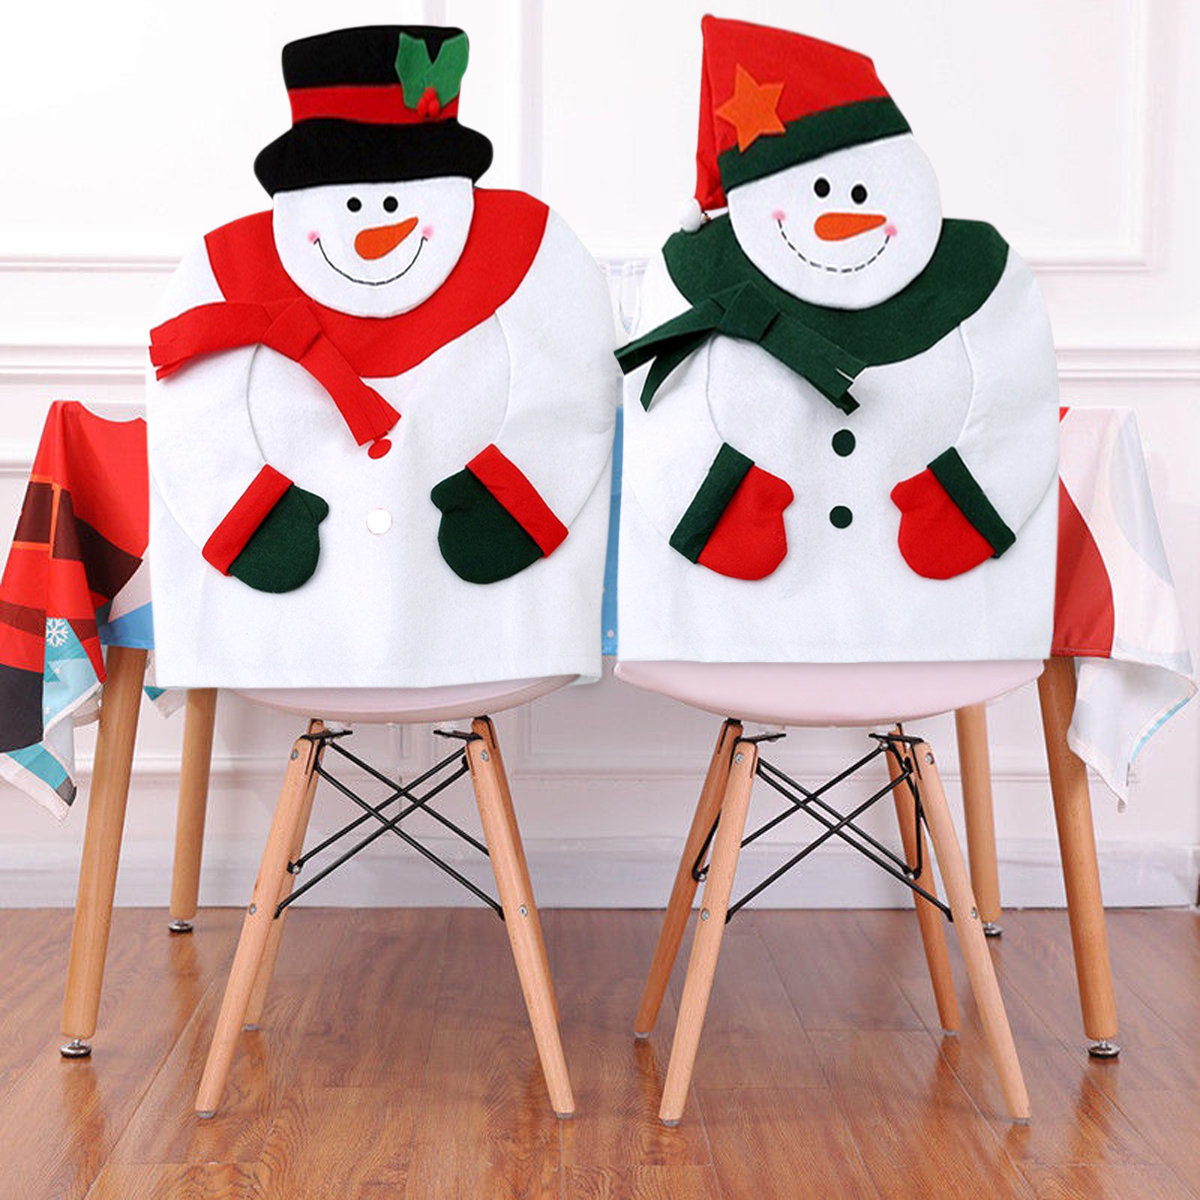 Cubierta de la silla del muñeco de nieve de la Navidad Cubierta de la silla del festival de la tela no tejida decorativa cubierta suave